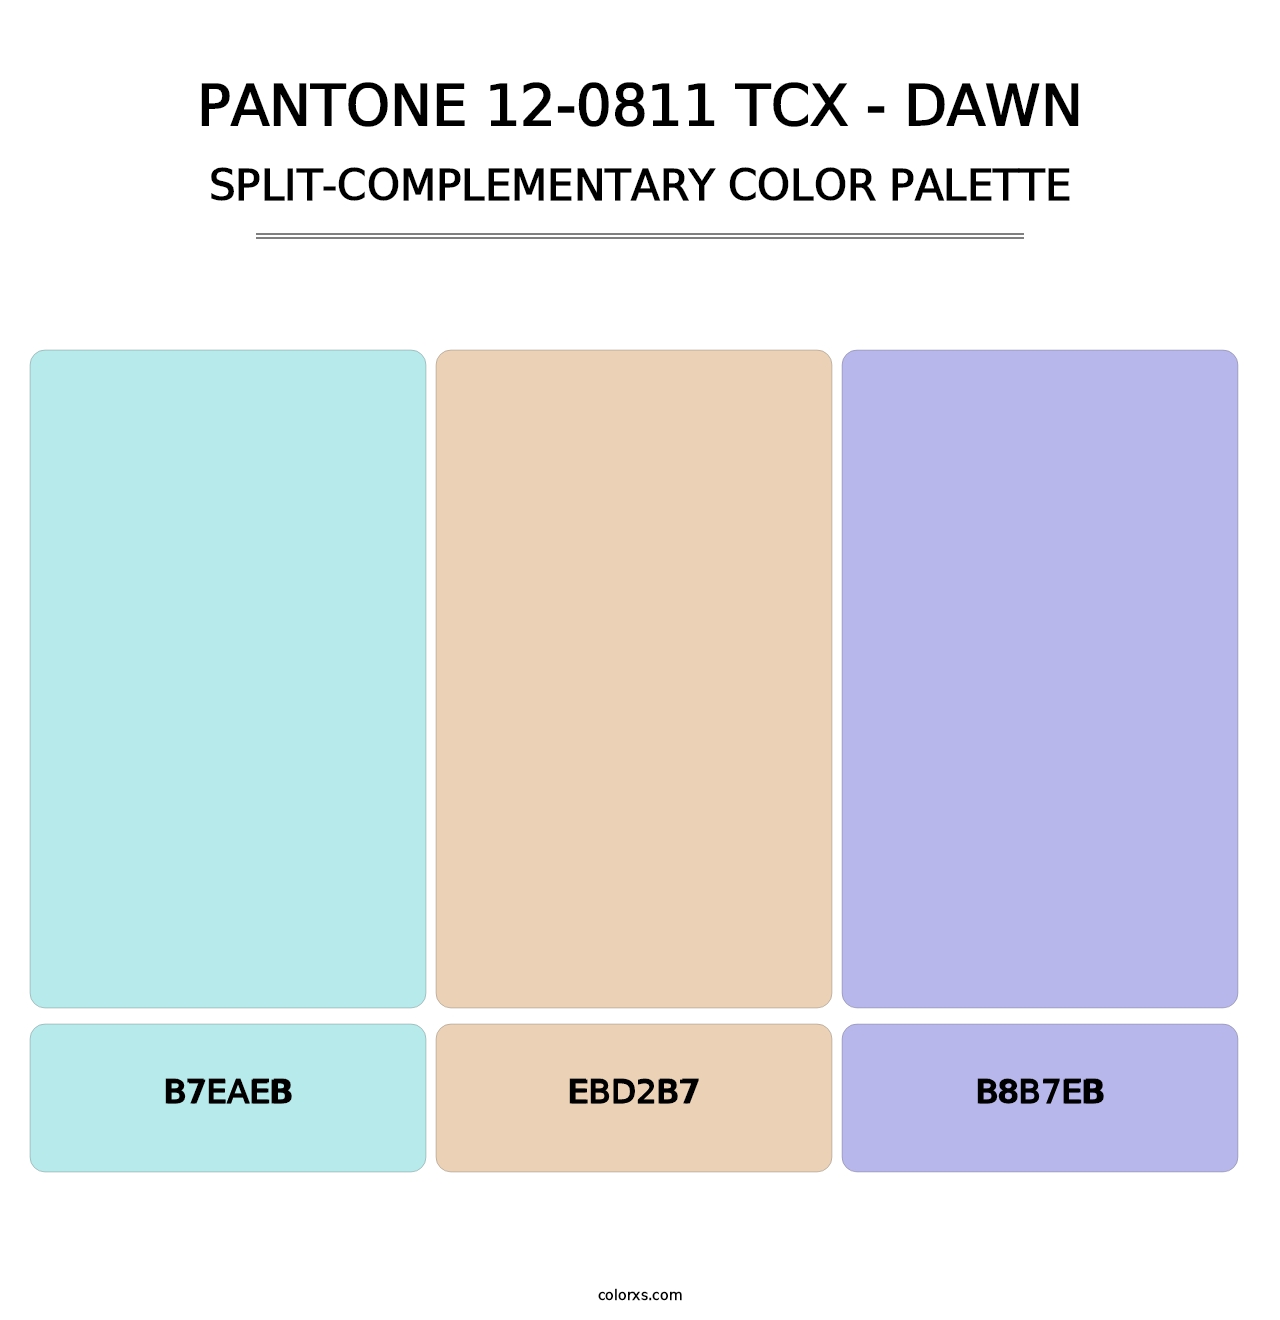 PANTONE 12-0811 TCX - Dawn - Split-Complementary Color Palette